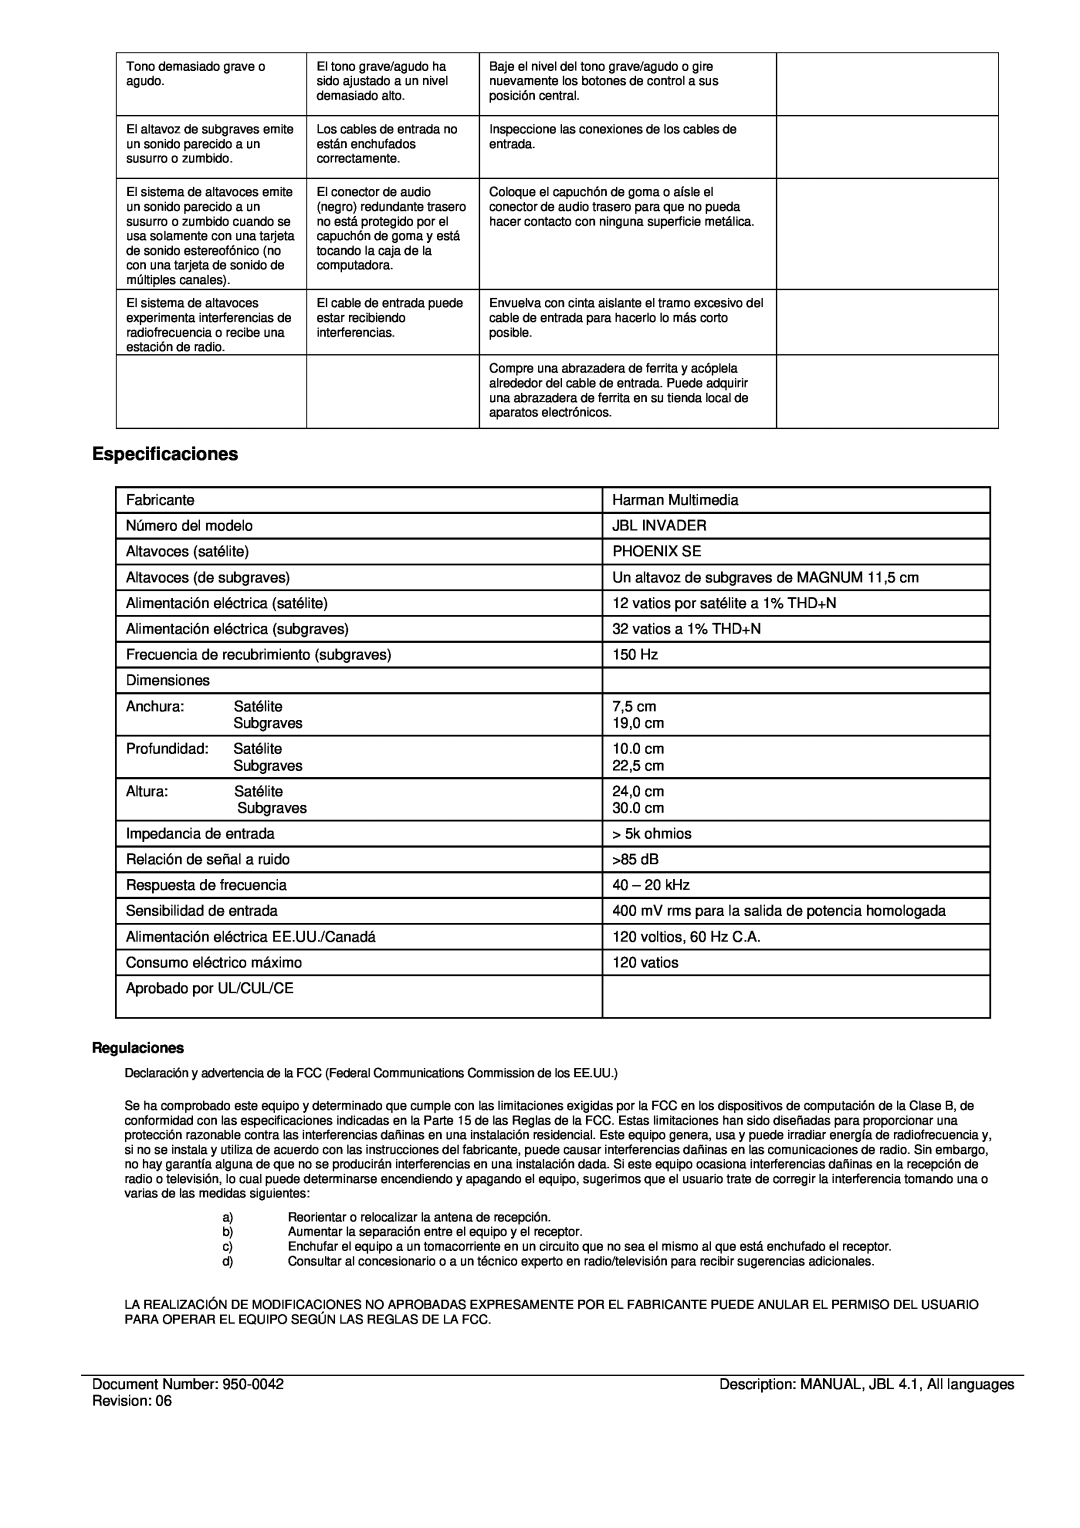 JBL INVADER manual Especificaciones, Regulaciones 